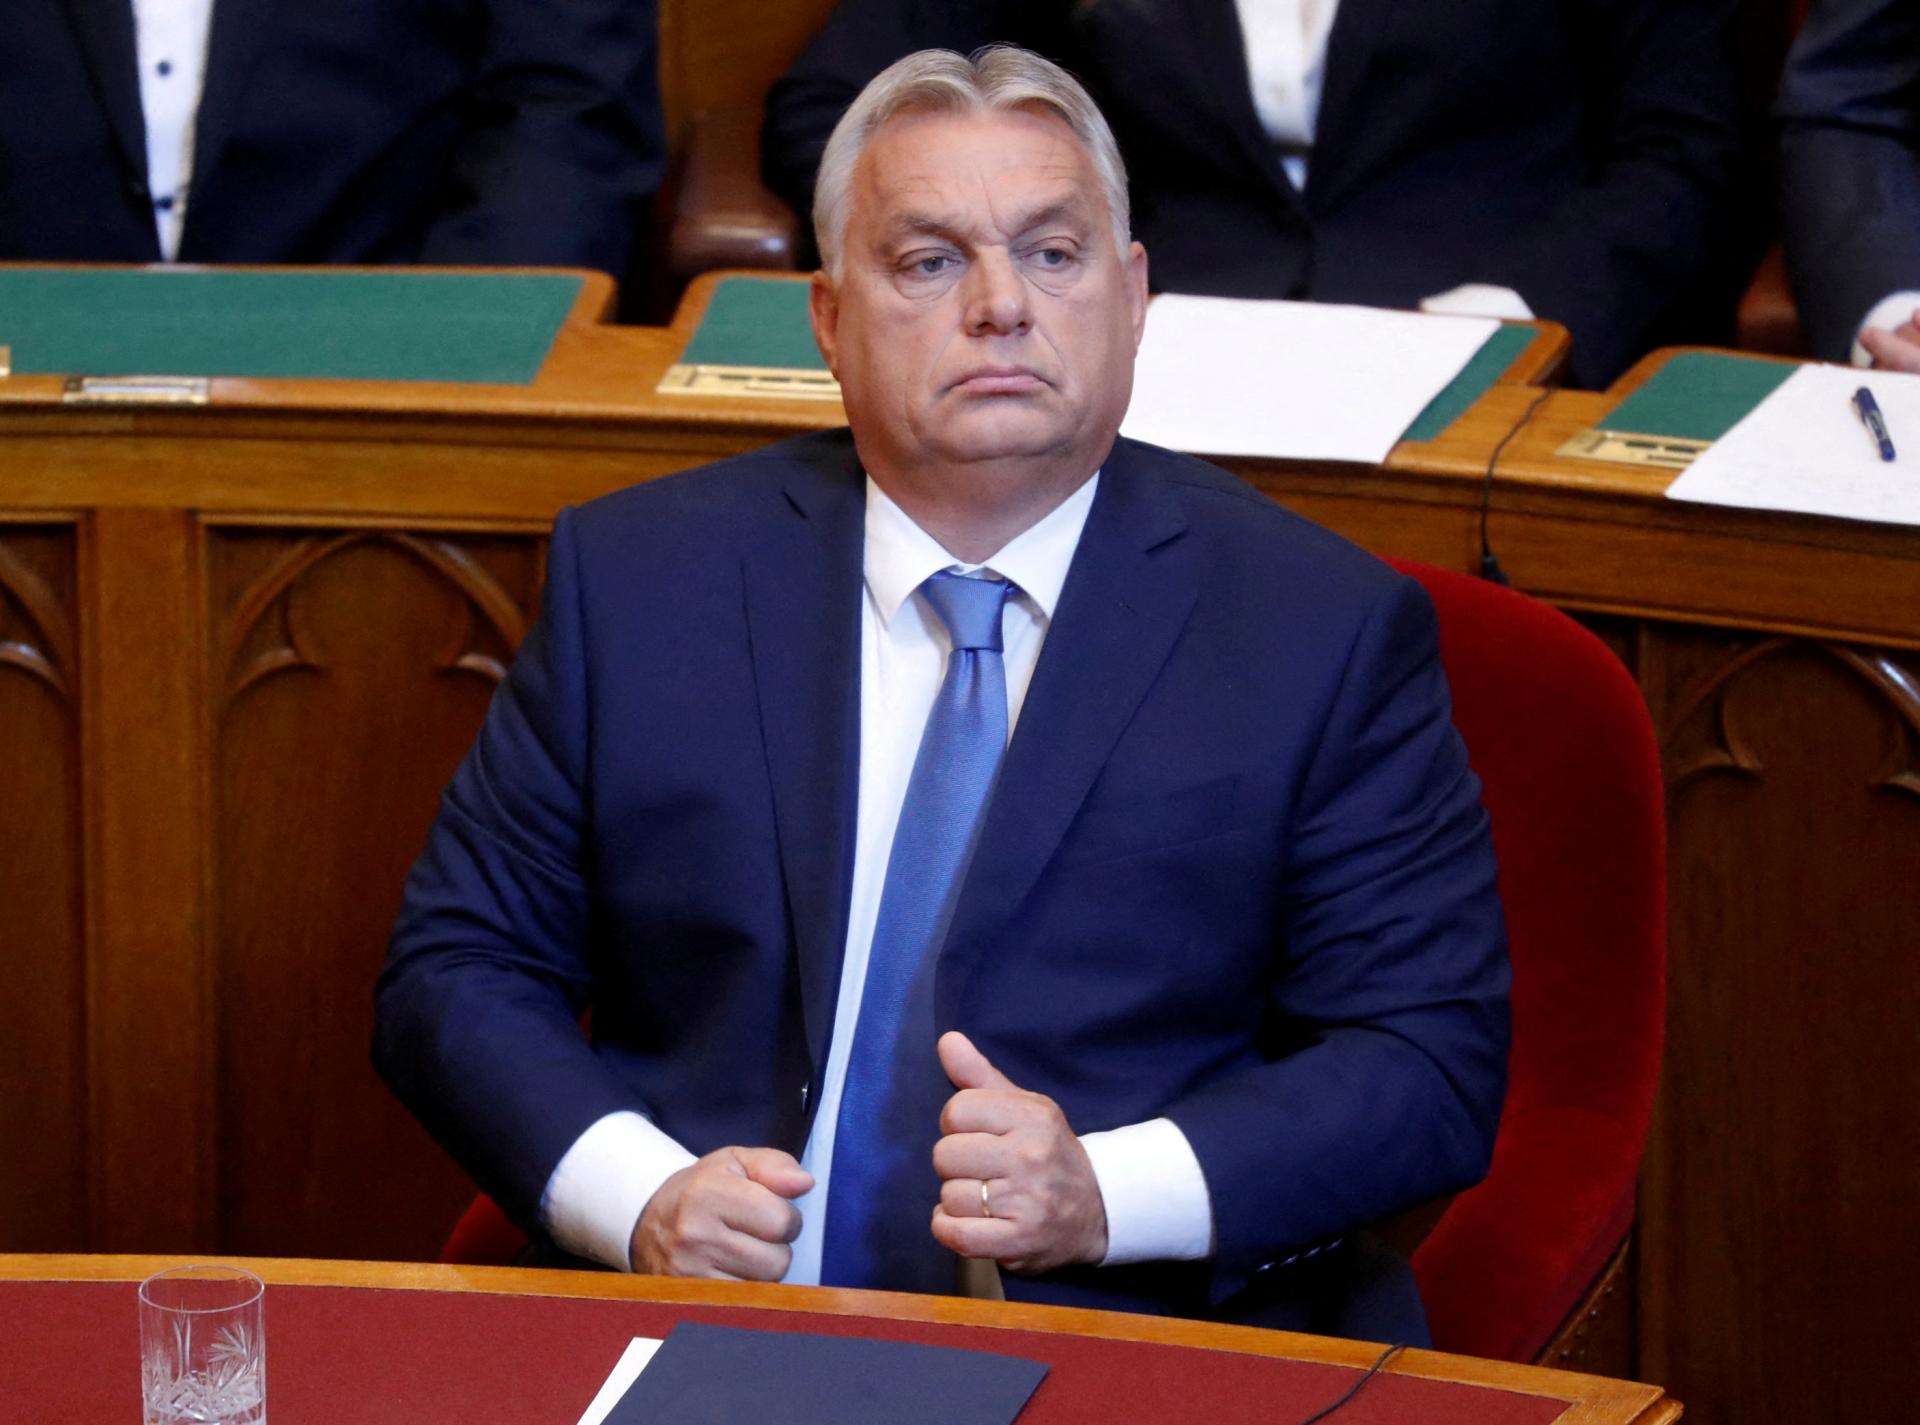 Brusel môže uvoľniť časť eurofondov smerujúcich do Maďarska, chce Orbánovu podporu pre vyšší rozpočet